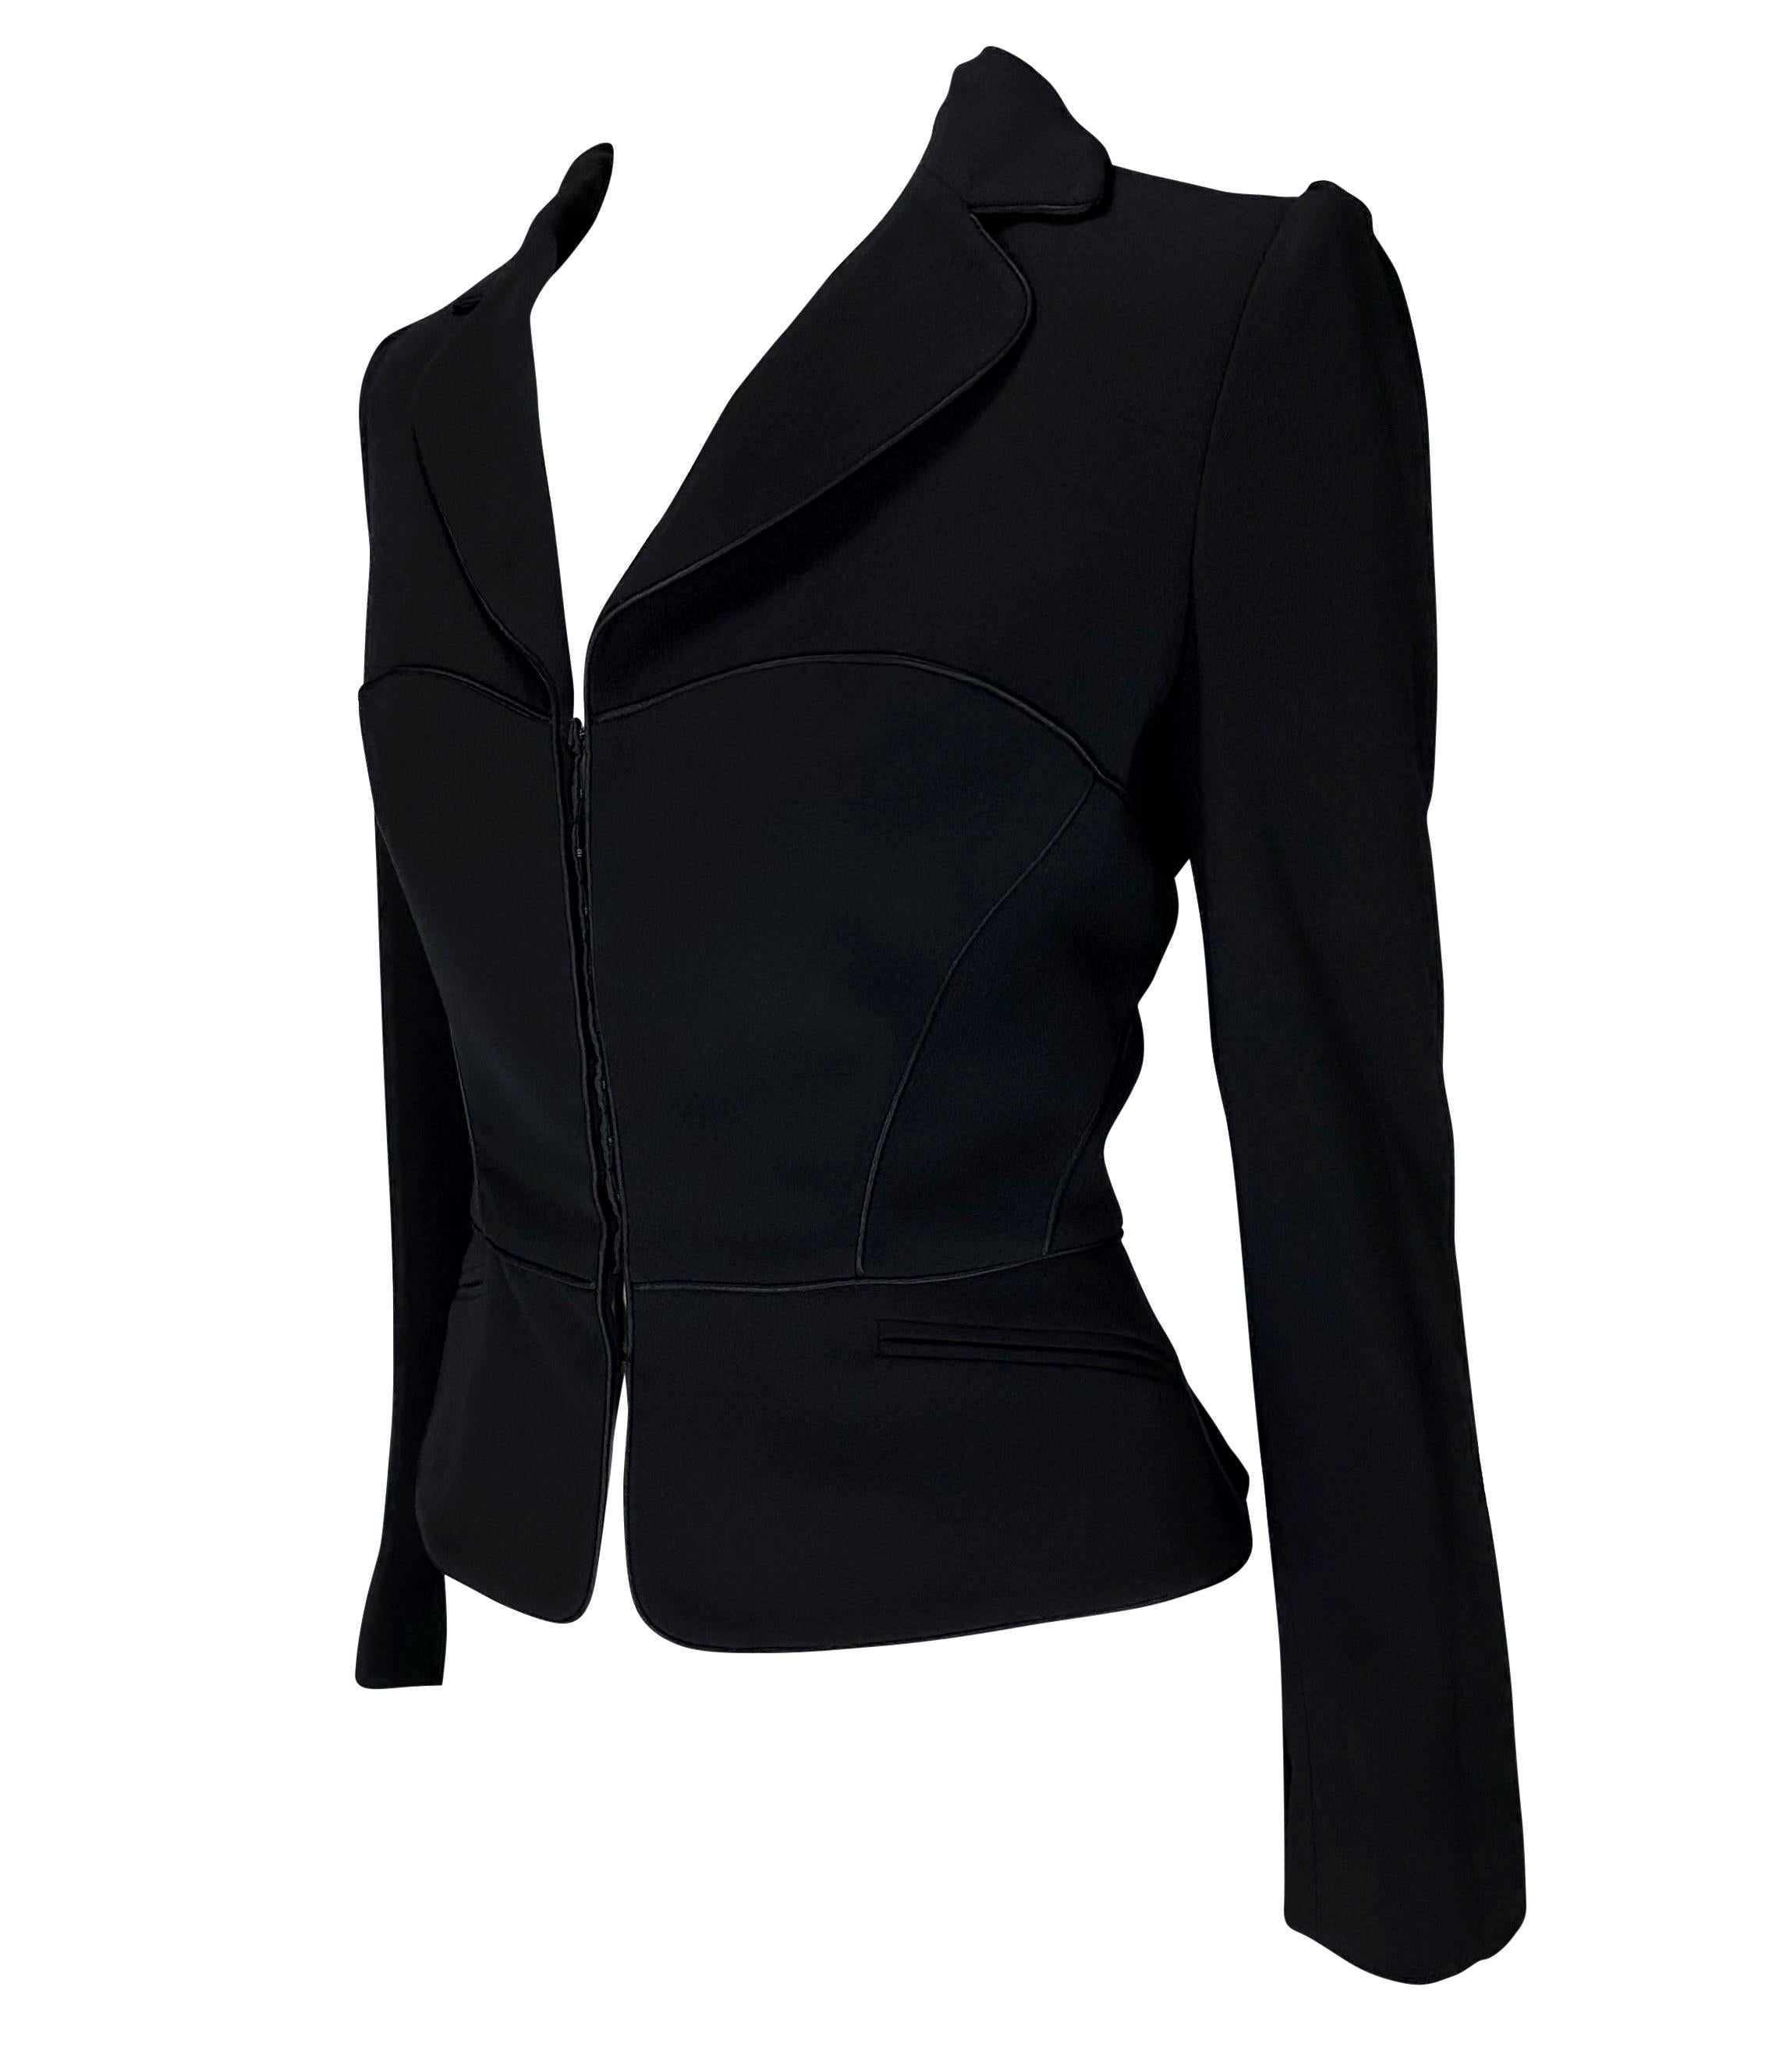 Women's 2000s Emanuel Ungaro Corset Lace-Up Black Cinched Blazer Jacket For Sale